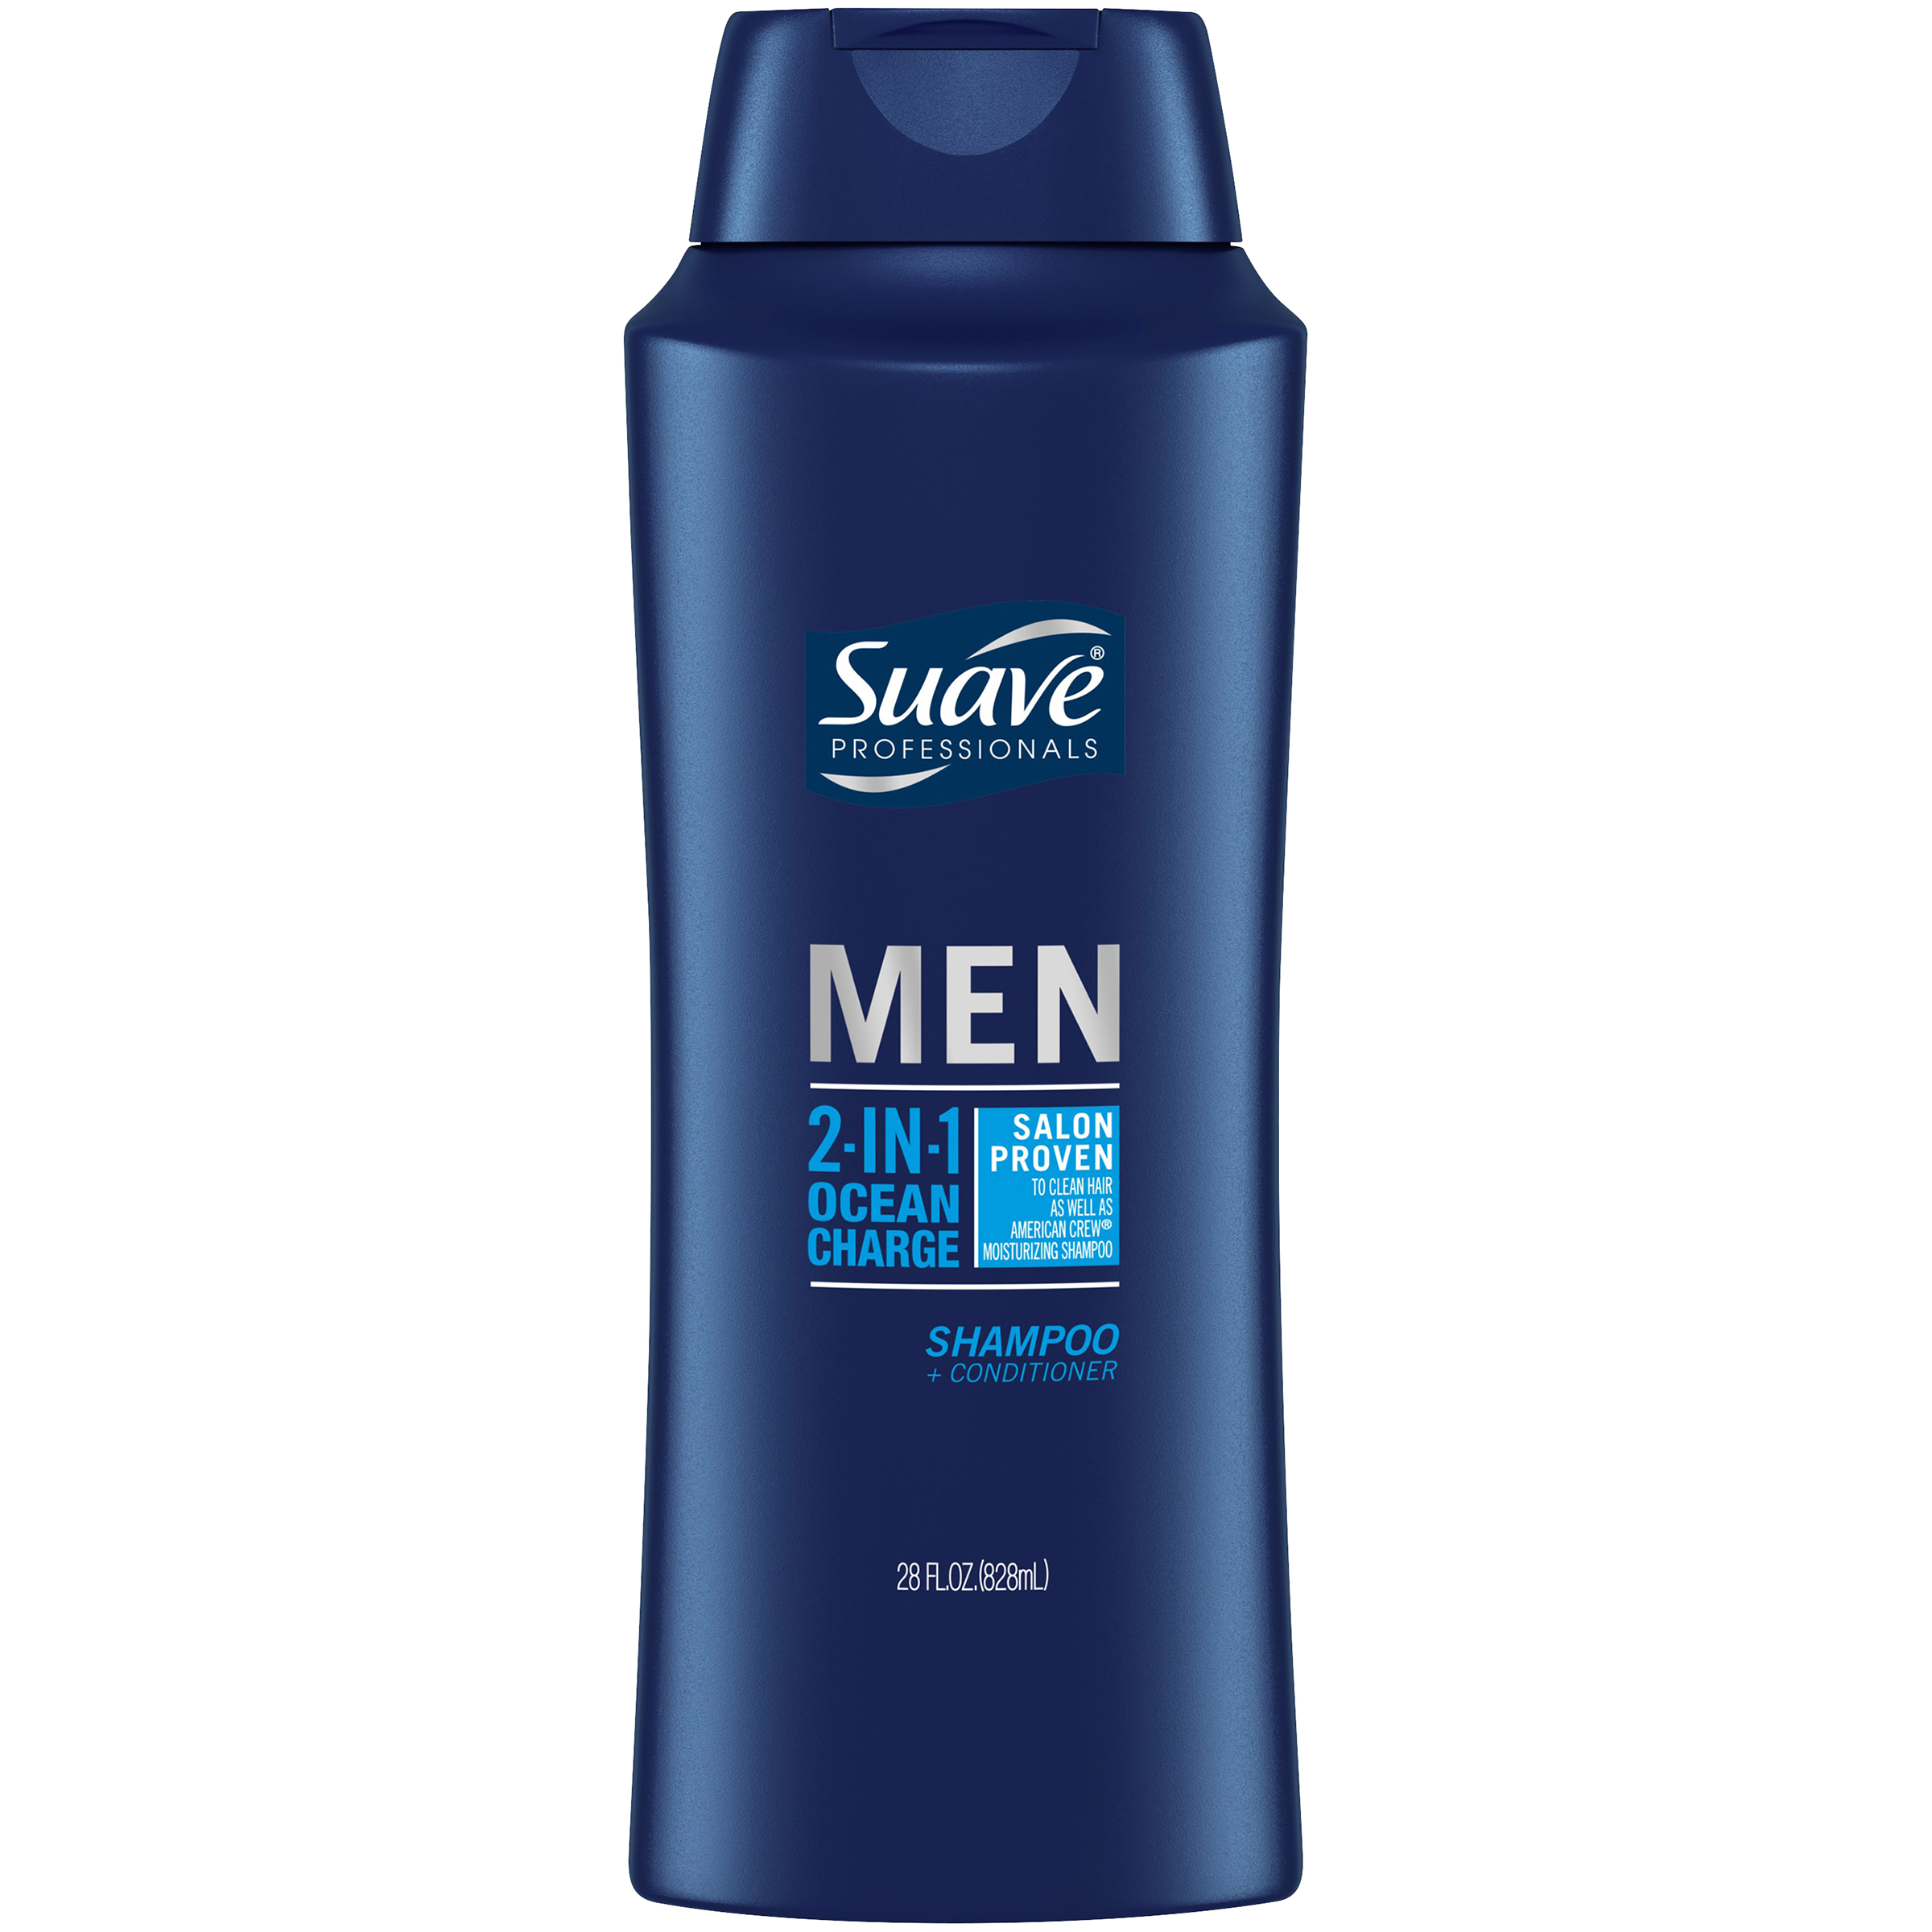 Suave Men Shampoo + Conditioner, 2 in 1, 32 fl oz (946 ml)